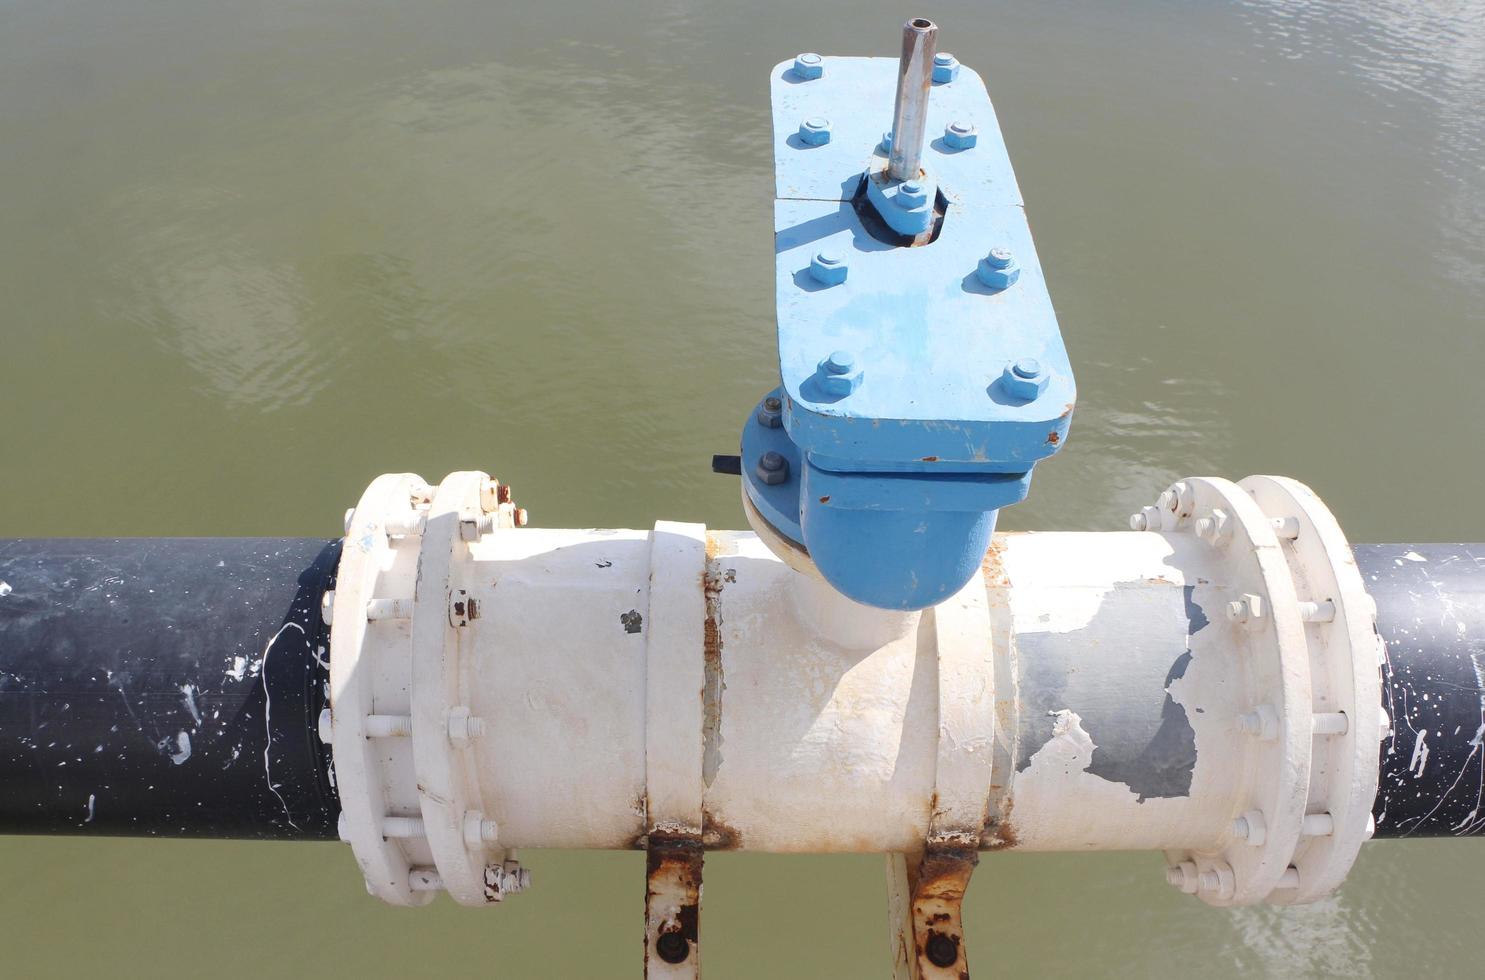 watertoevoerleiding met flens en boutverbindingen over de rivier. foto